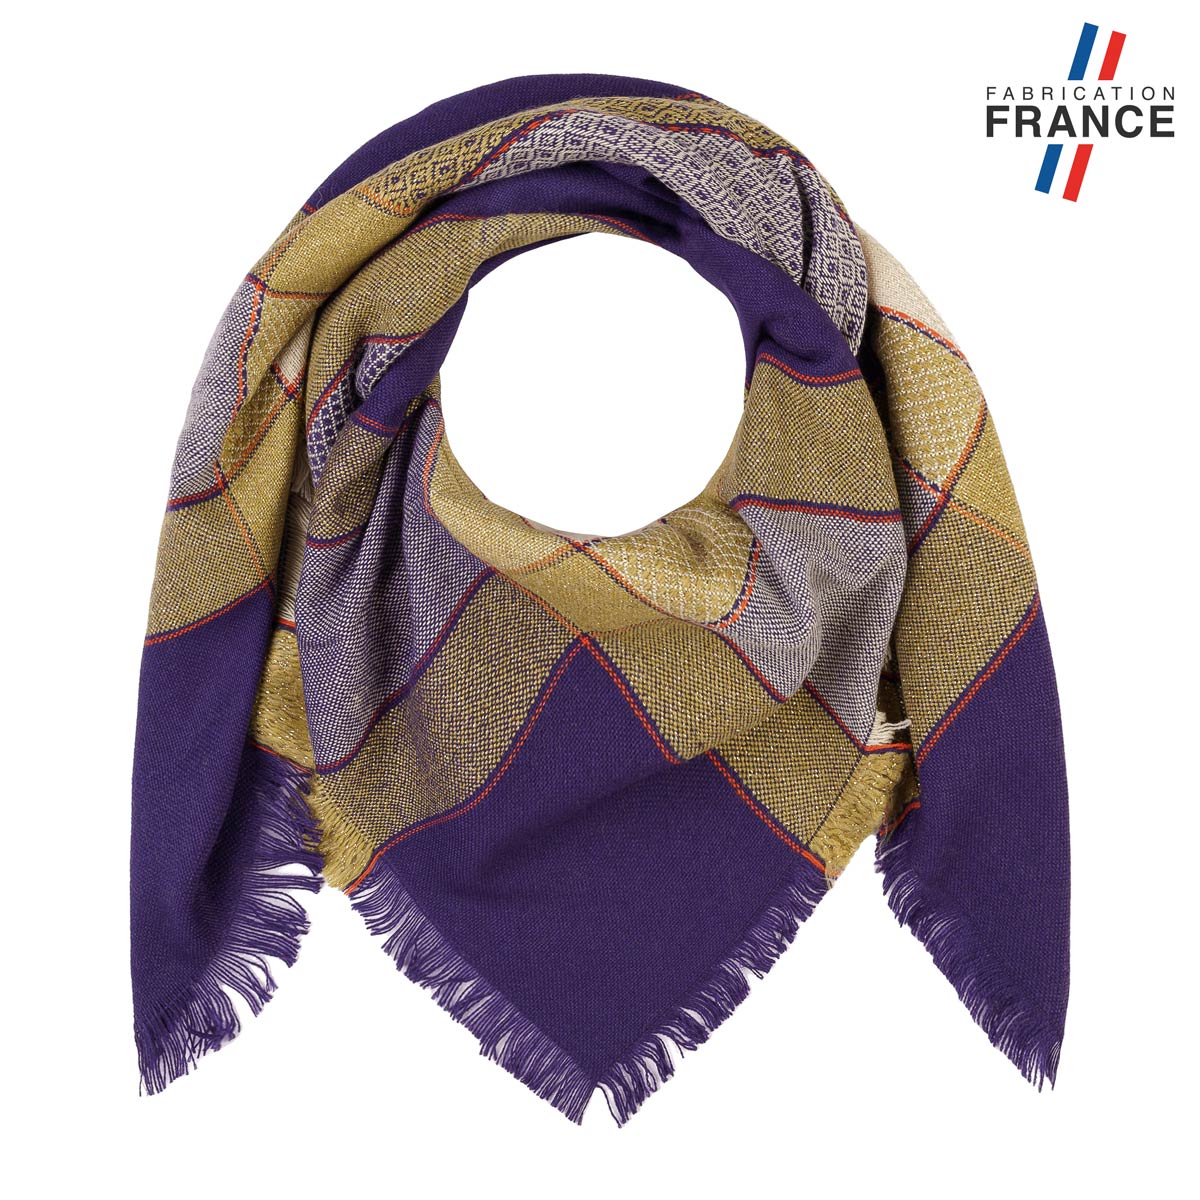 Echarpe-carree-femme-violette-fabrication-francaise--AT-06929_F12-1FR